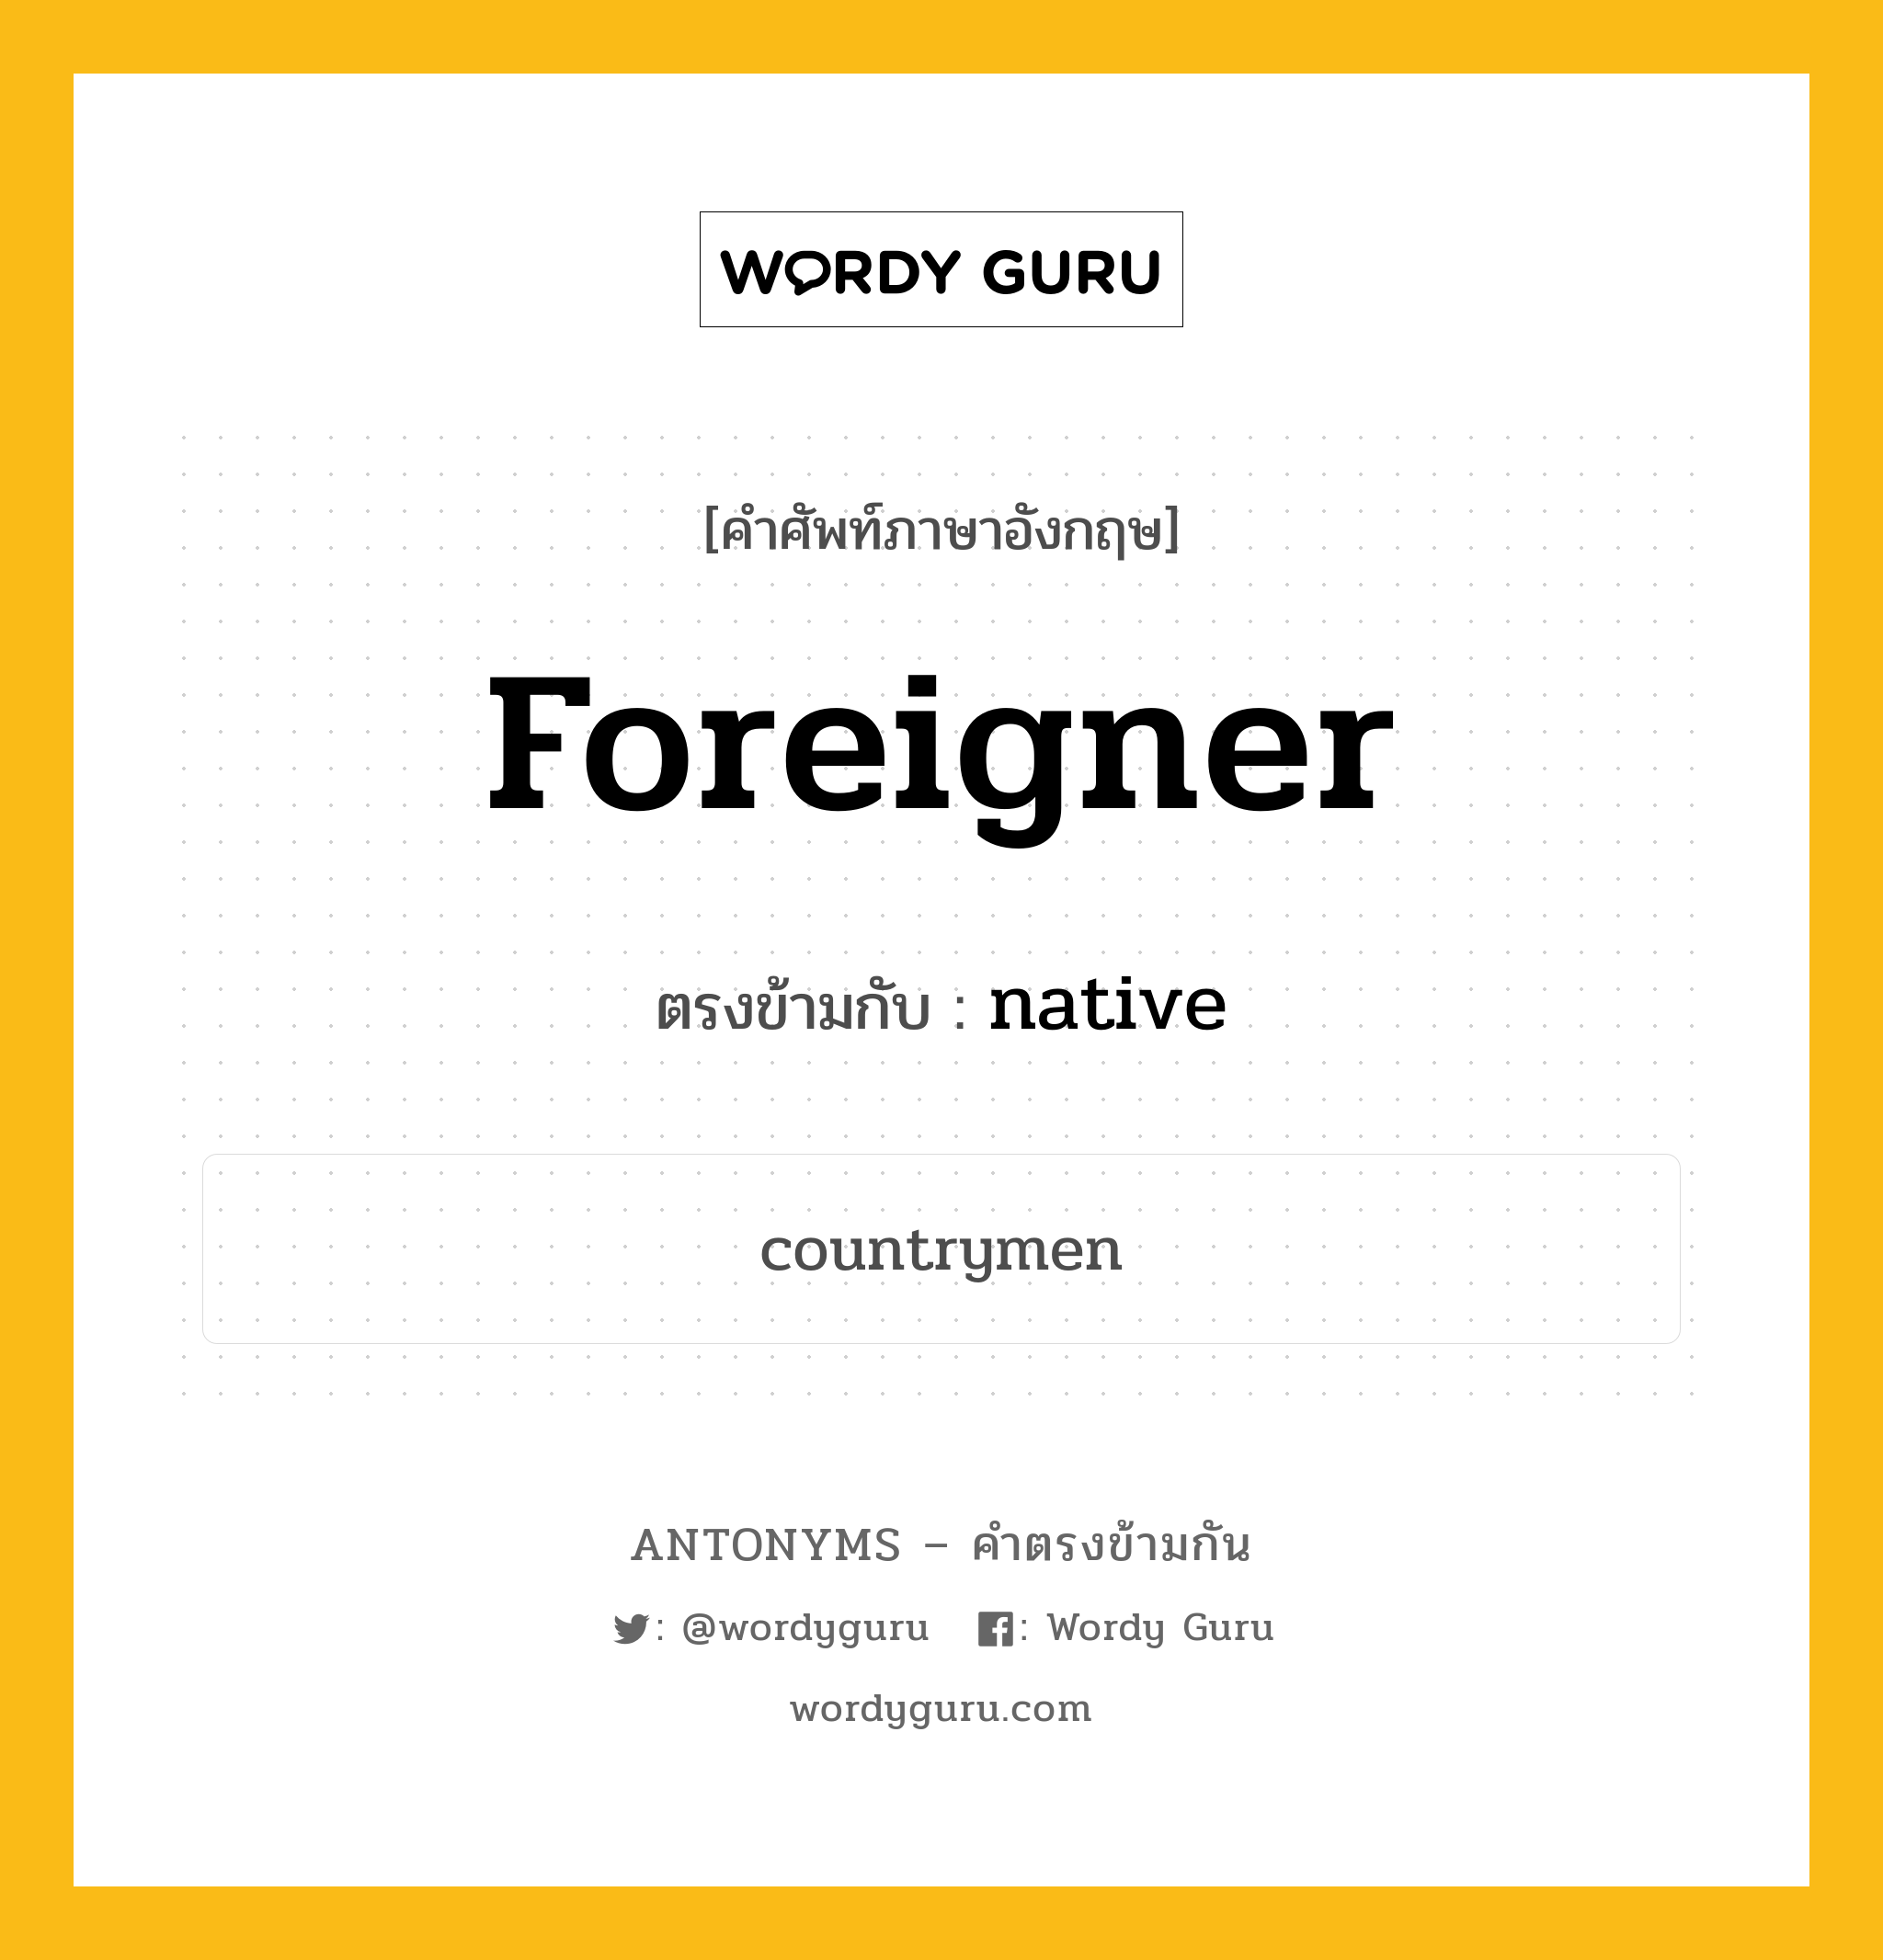 foreigner เป็นคำตรงข้ามกับคำไหนบ้าง?, คำศัพท์ภาษาอังกฤษ foreigner ตรงข้ามกับ native หมวด native